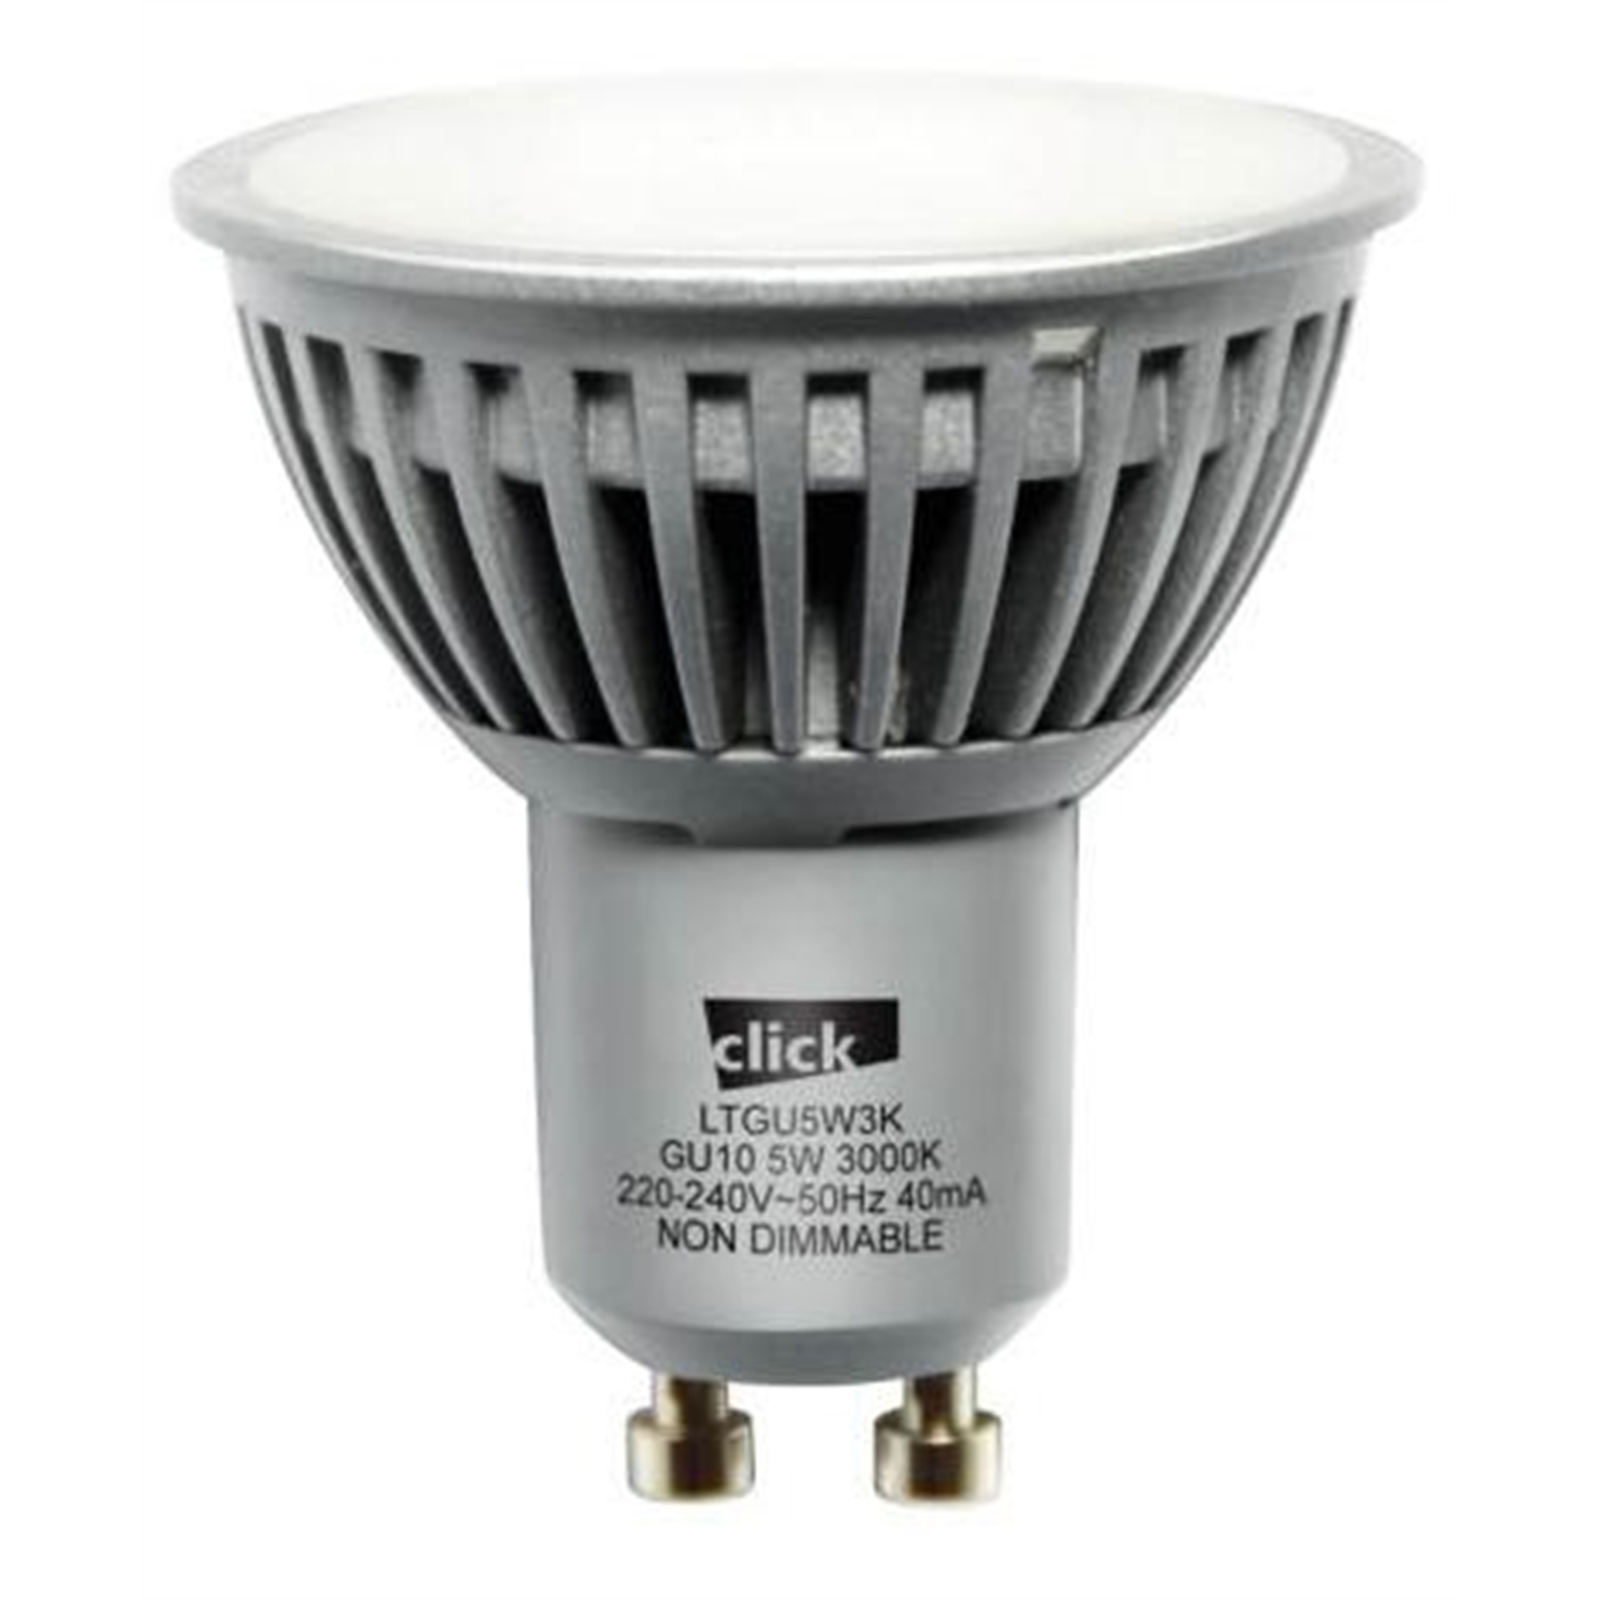 Click 5w GU10 LED Warm White Globes - 4 Pack